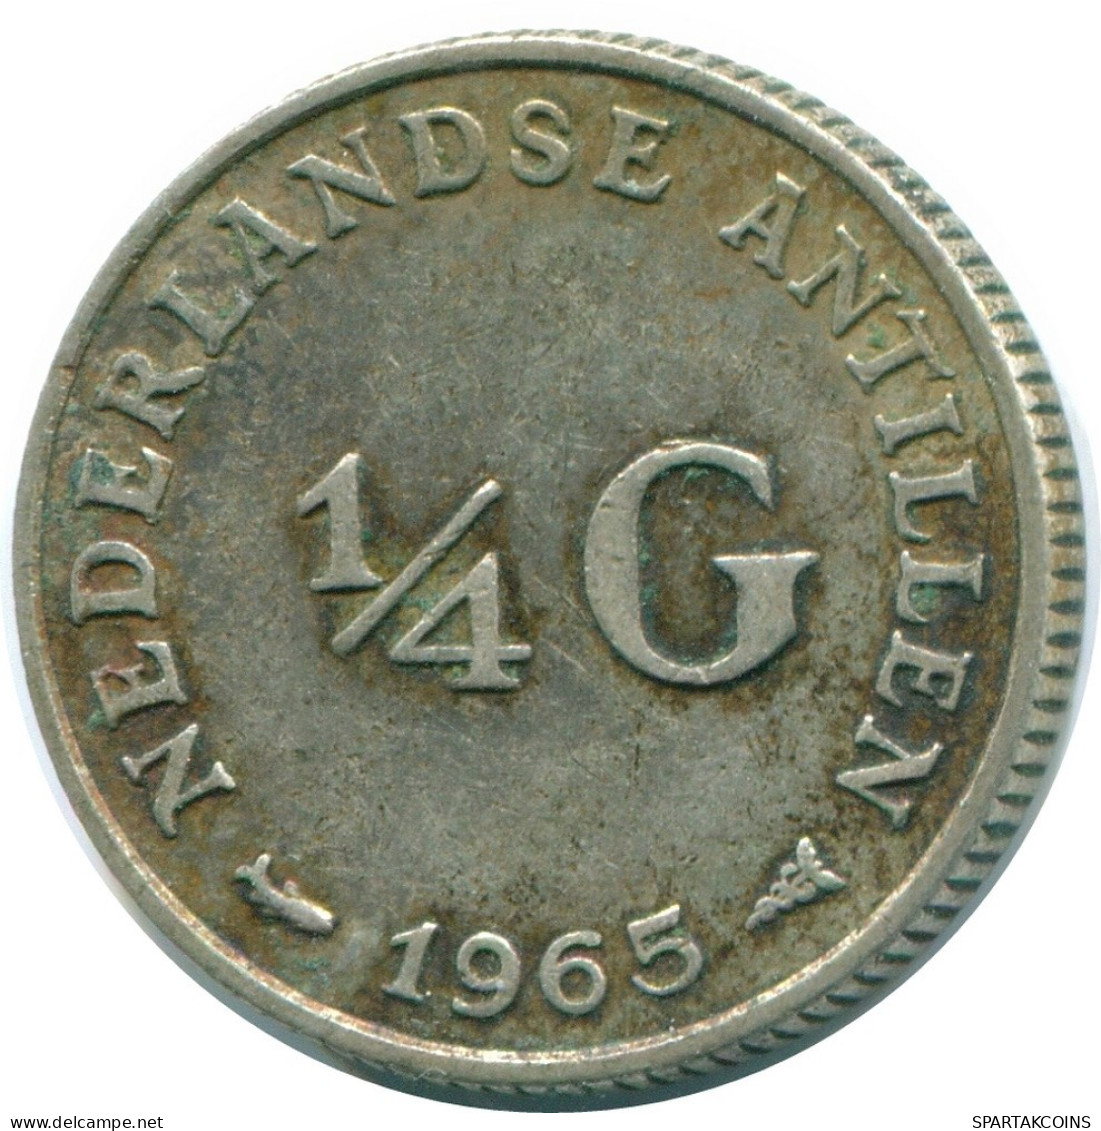 1/4 GULDEN 1965 NIEDERLÄNDISCHE ANTILLEN SILBER Koloniale Münze #NL11344.4.D.A - Niederländische Antillen